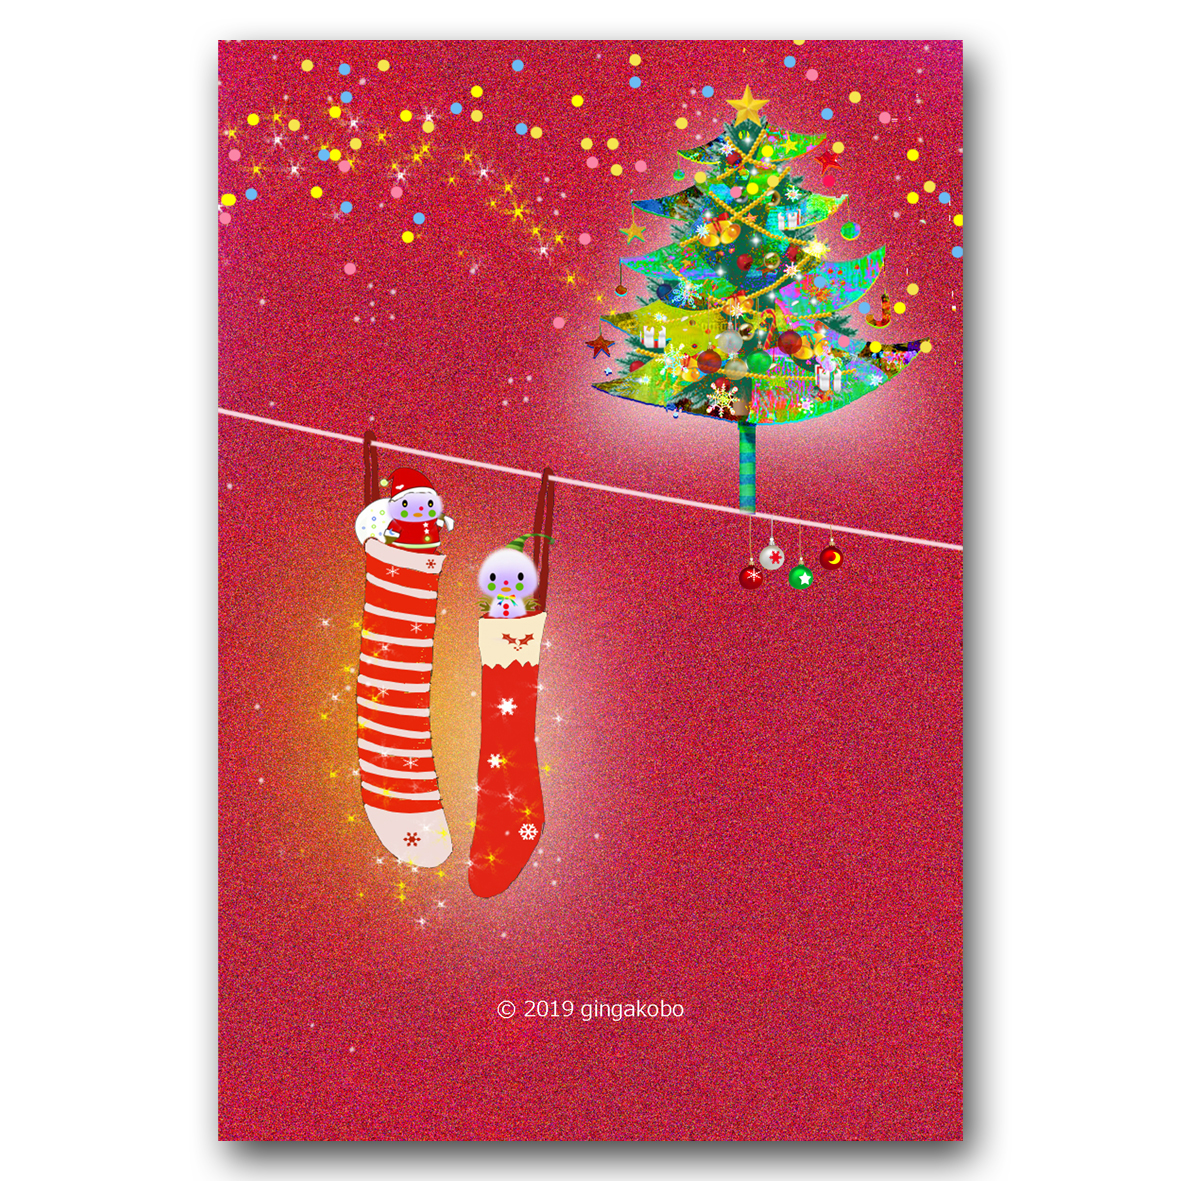 ほっこりにっこりクリスマス ほっこり癒しのイラストポストカード2枚組 No 887 Iichi ハンドメイド クラフト作品 手仕事品の通販